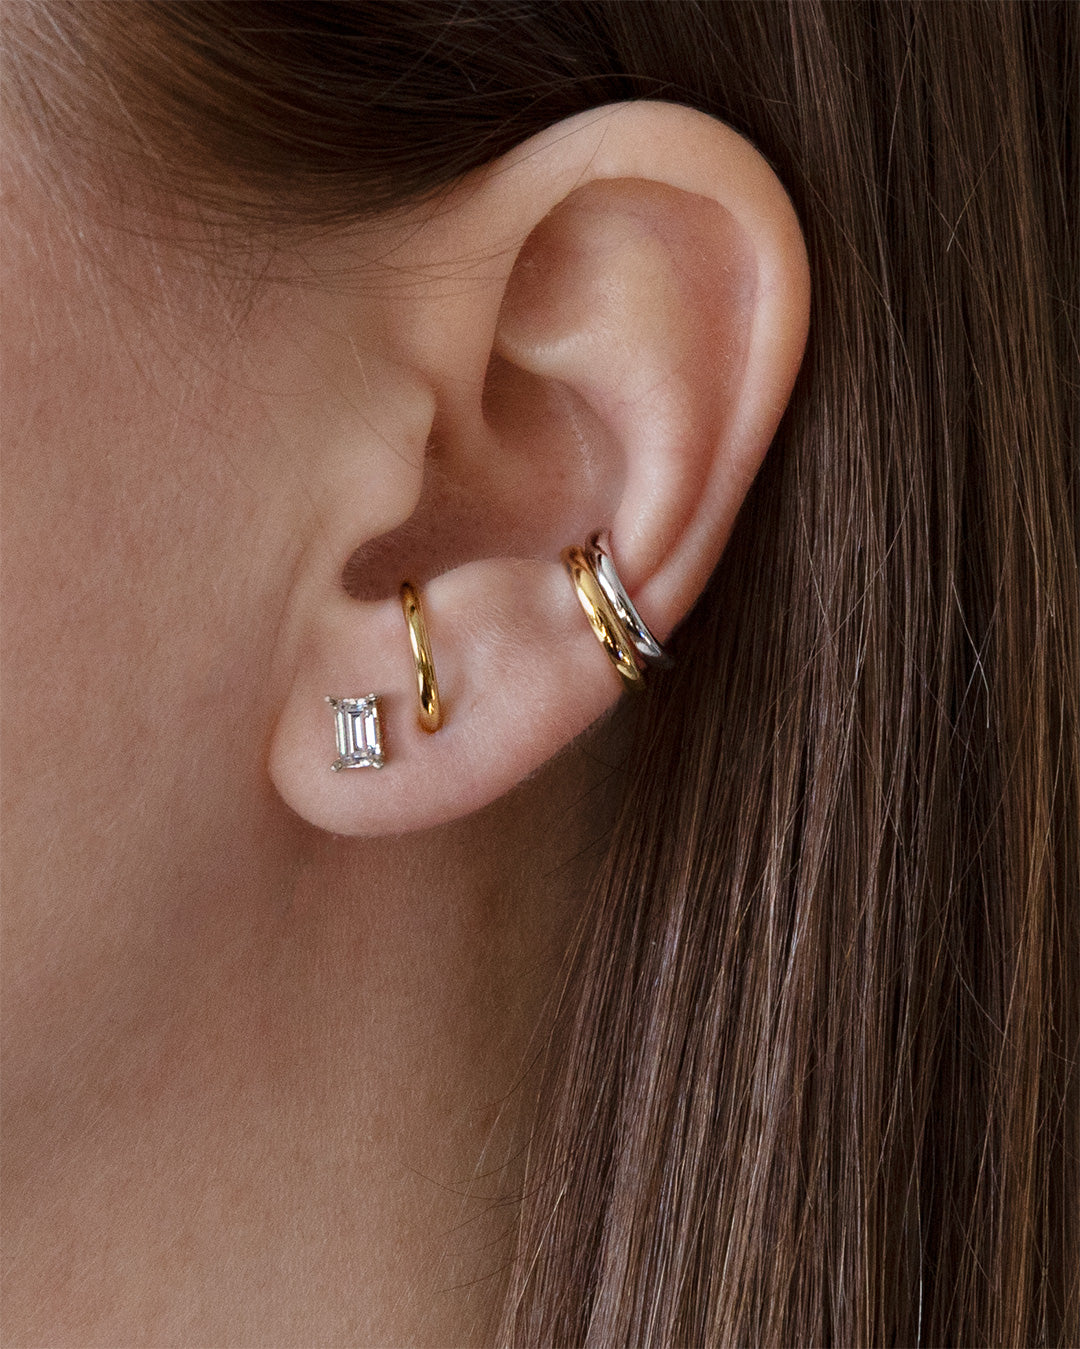 Share 135+ long ear cuff earrings best